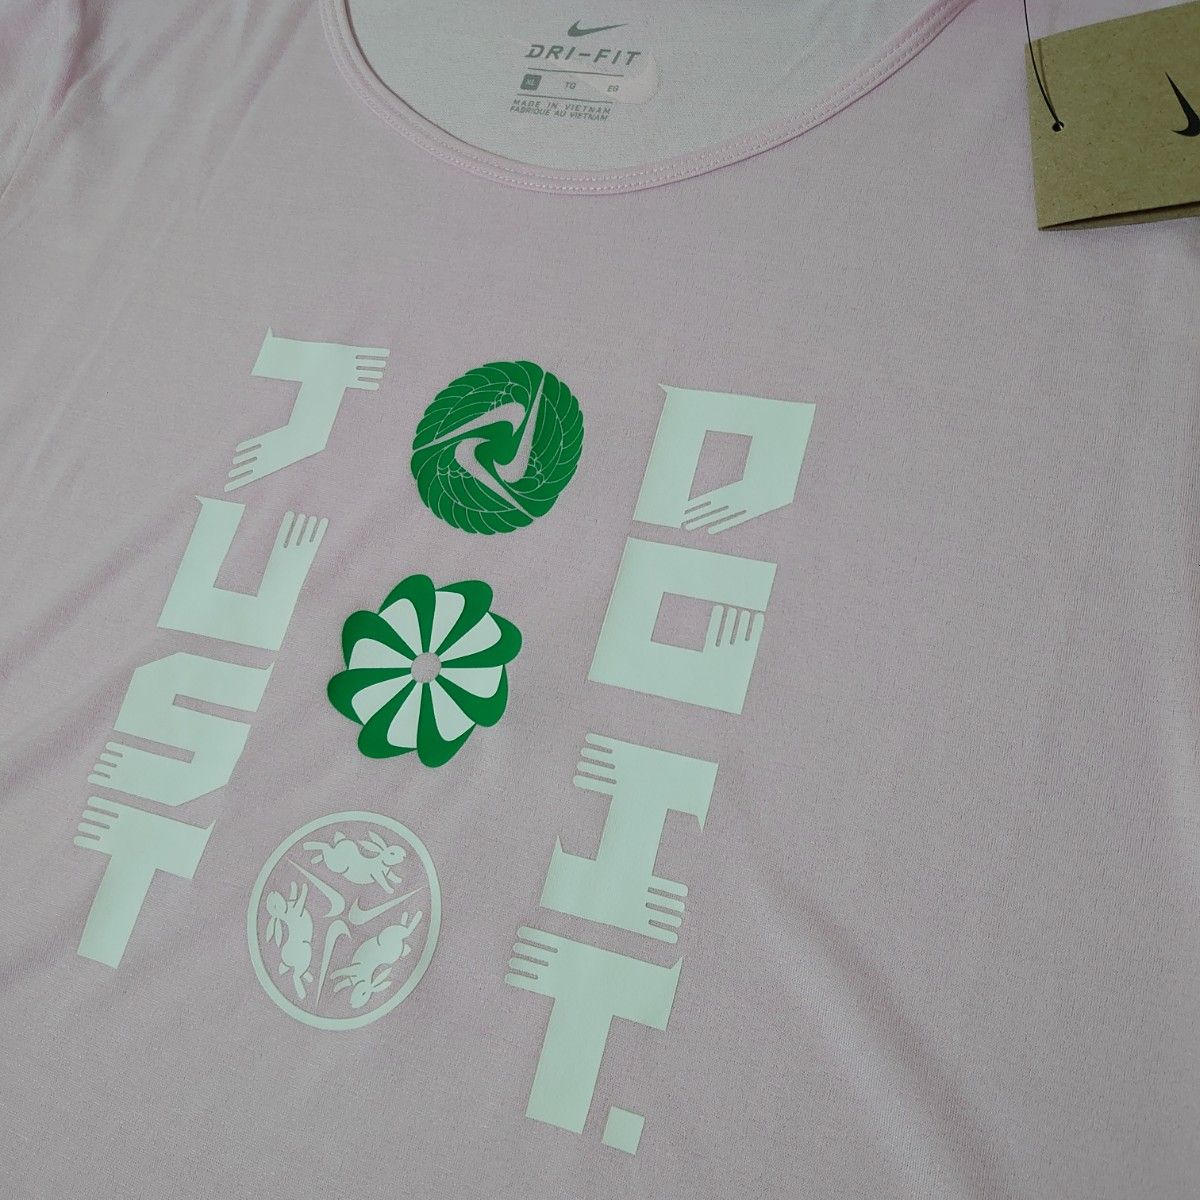 NIKE ナイキ ドライフィット ランニング Tシャツ 定価4400円 半袖 ロゴ Tシャツ